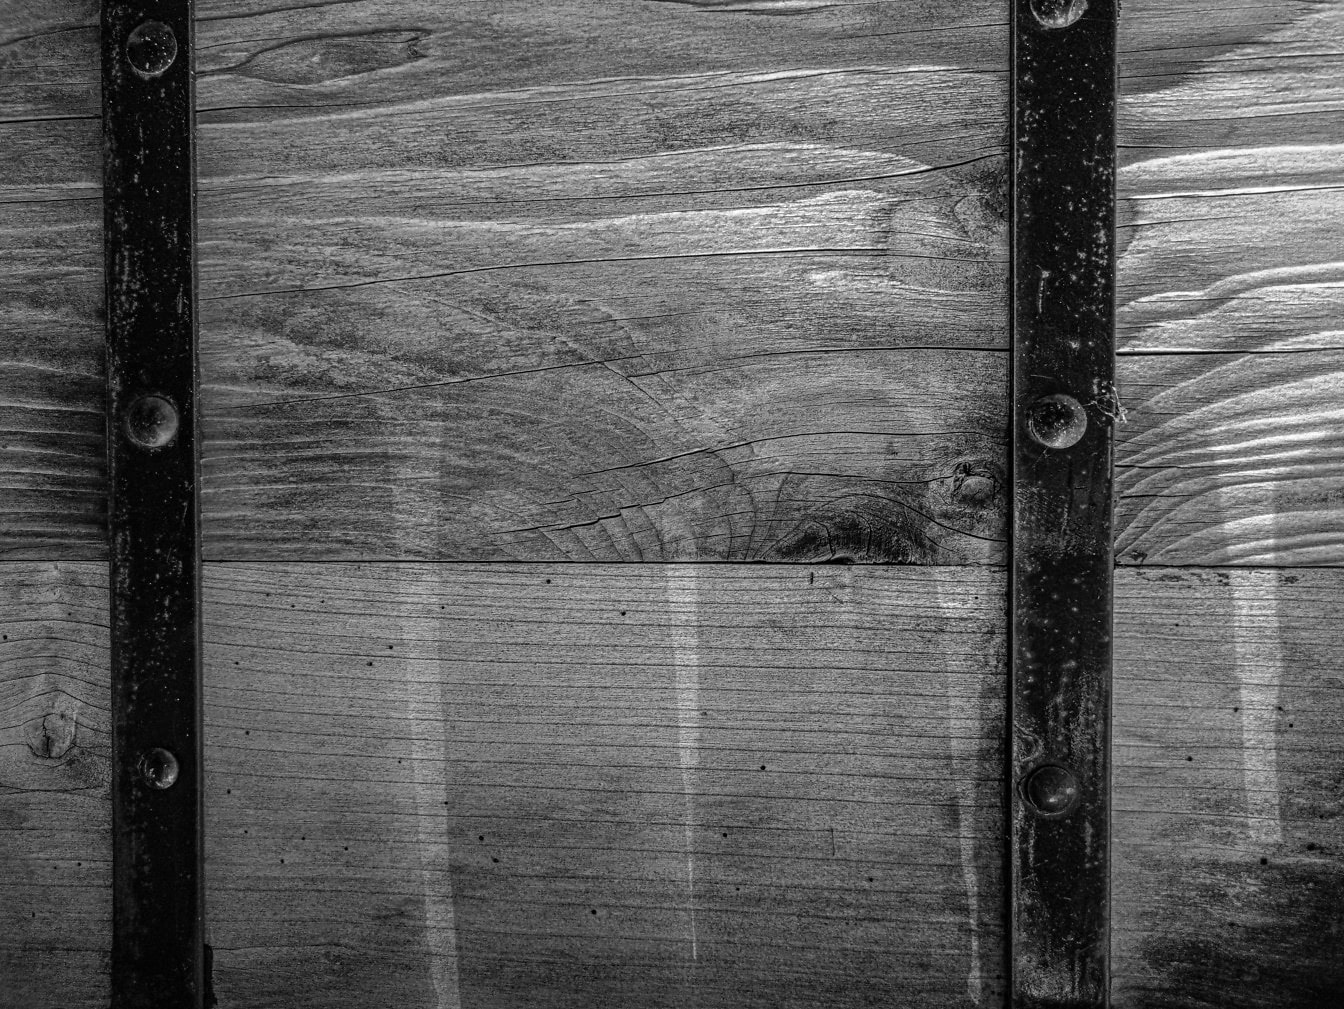 Schwarz-Weiß-Foto eines schwarzen Gusseisenrahmens auf einer Holzoberfläche